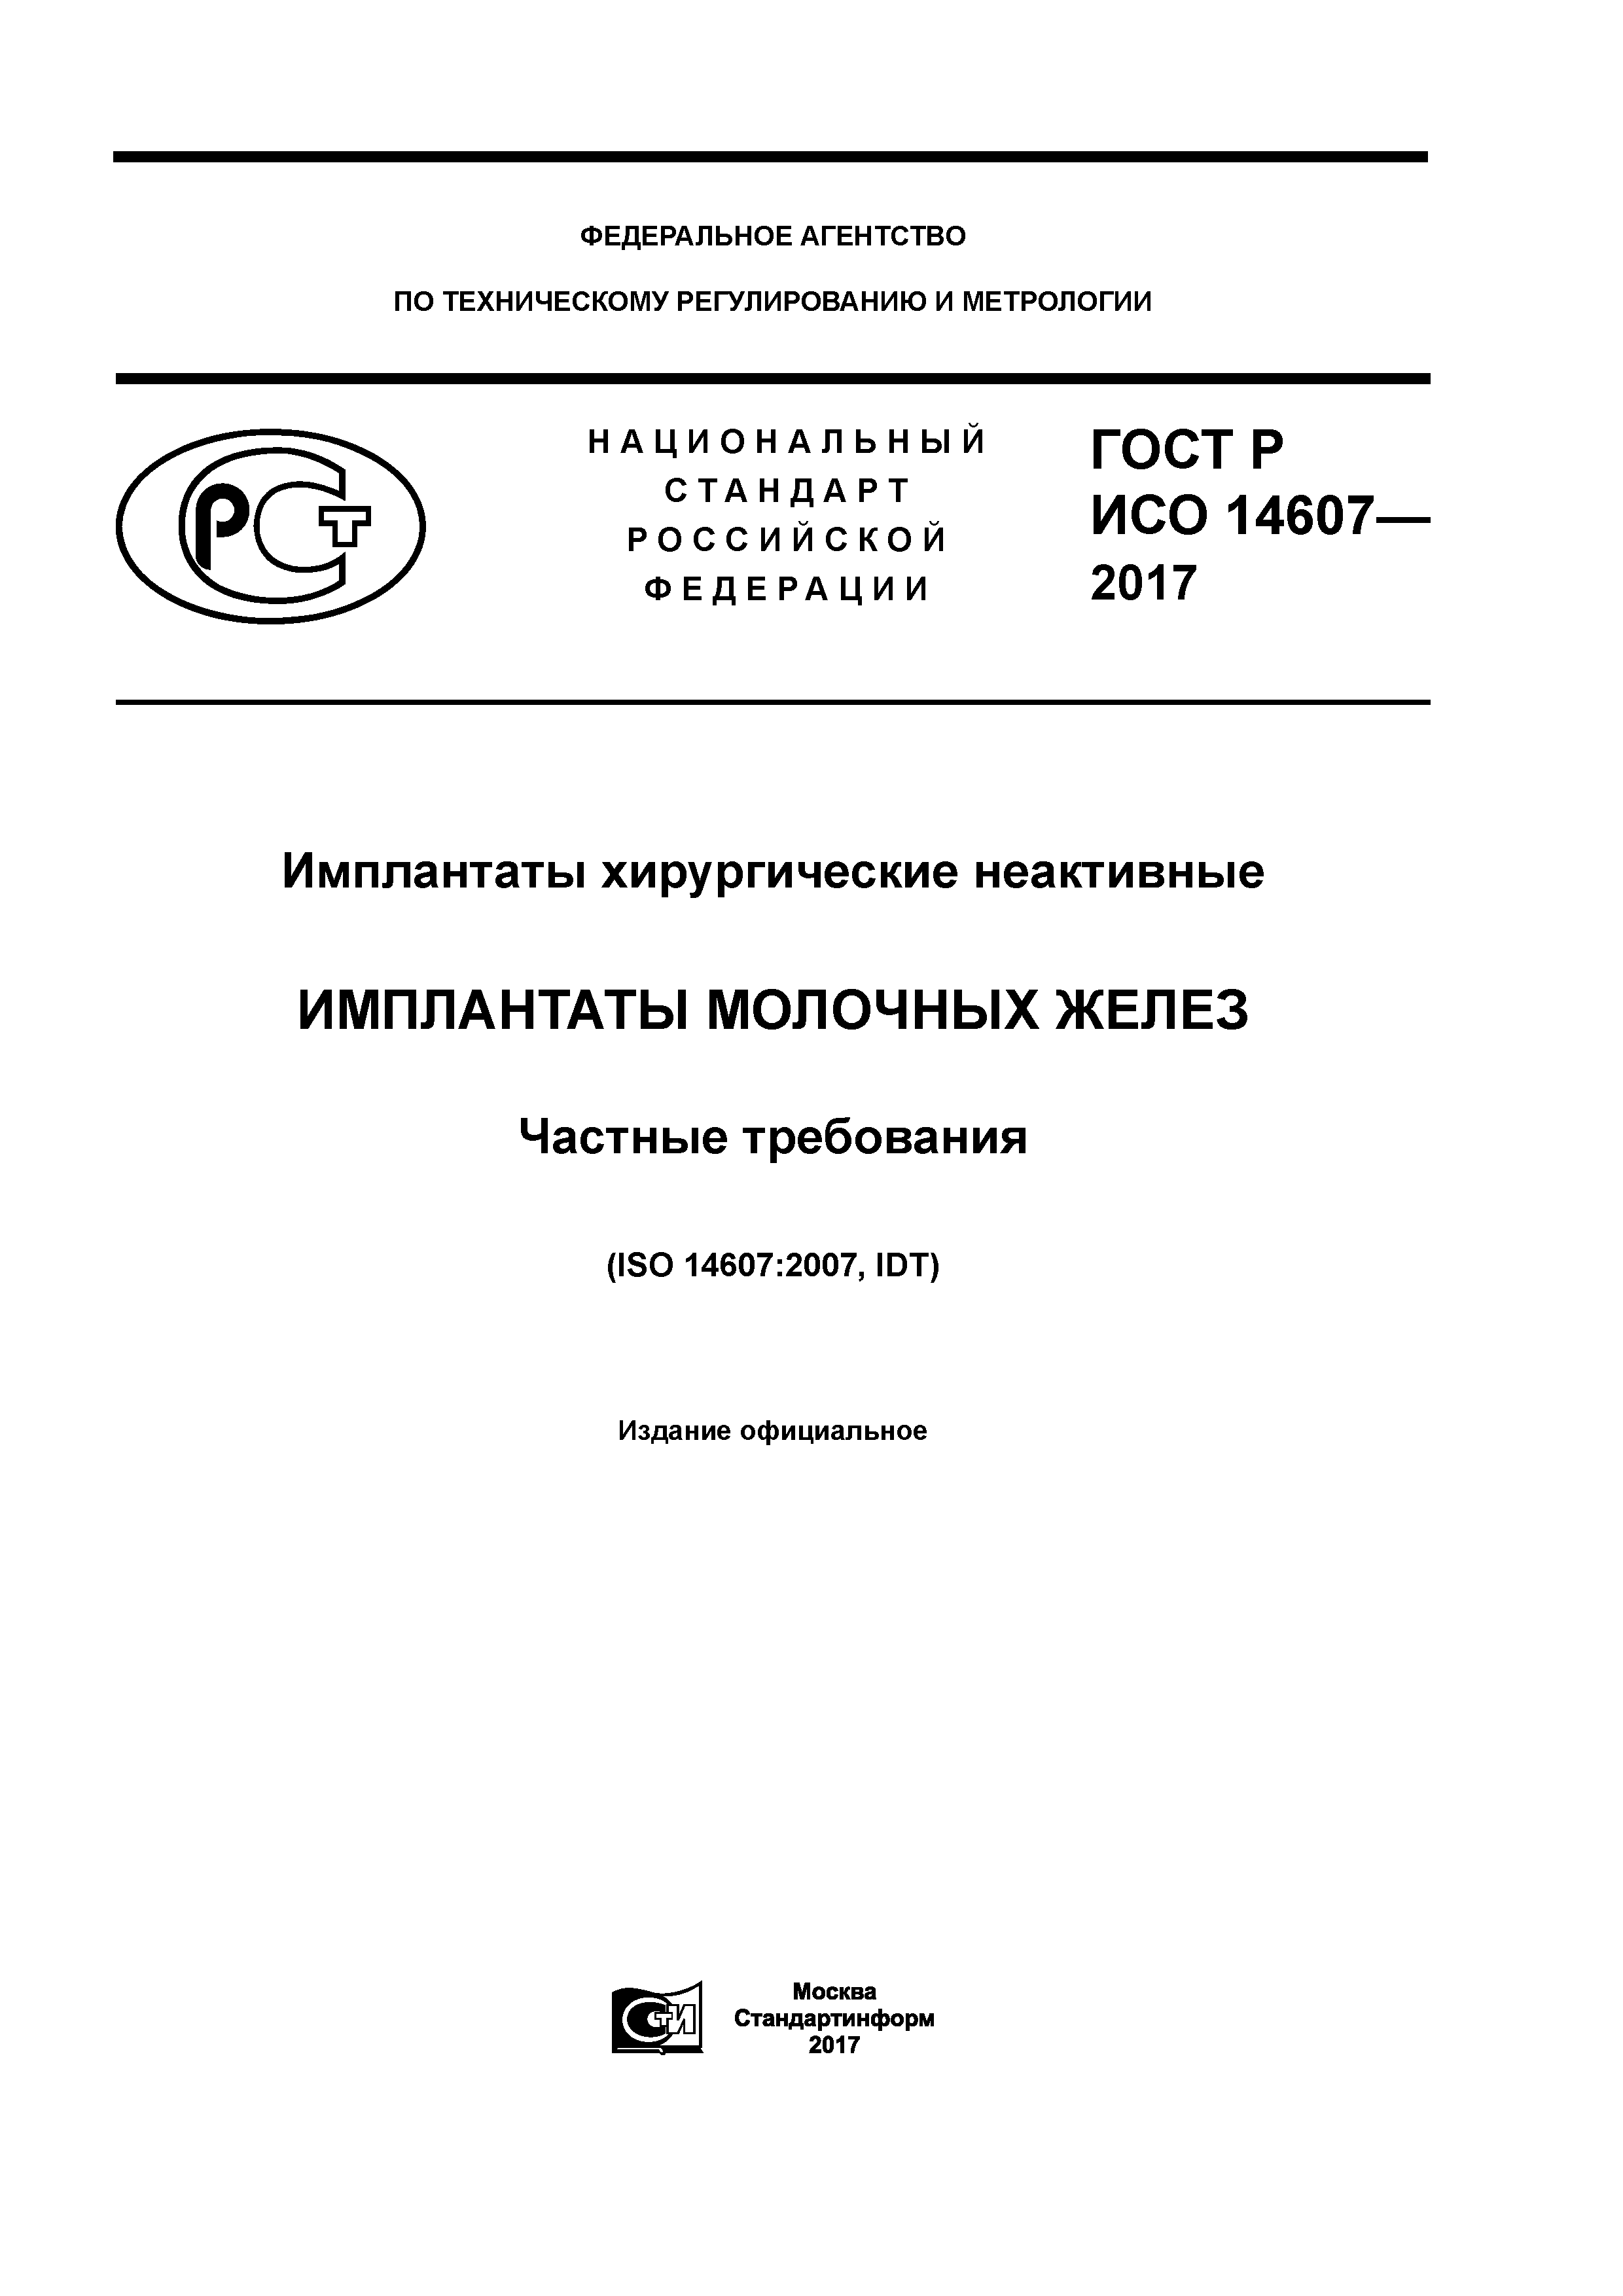 ГОСТ Р ИСО 14607-2017